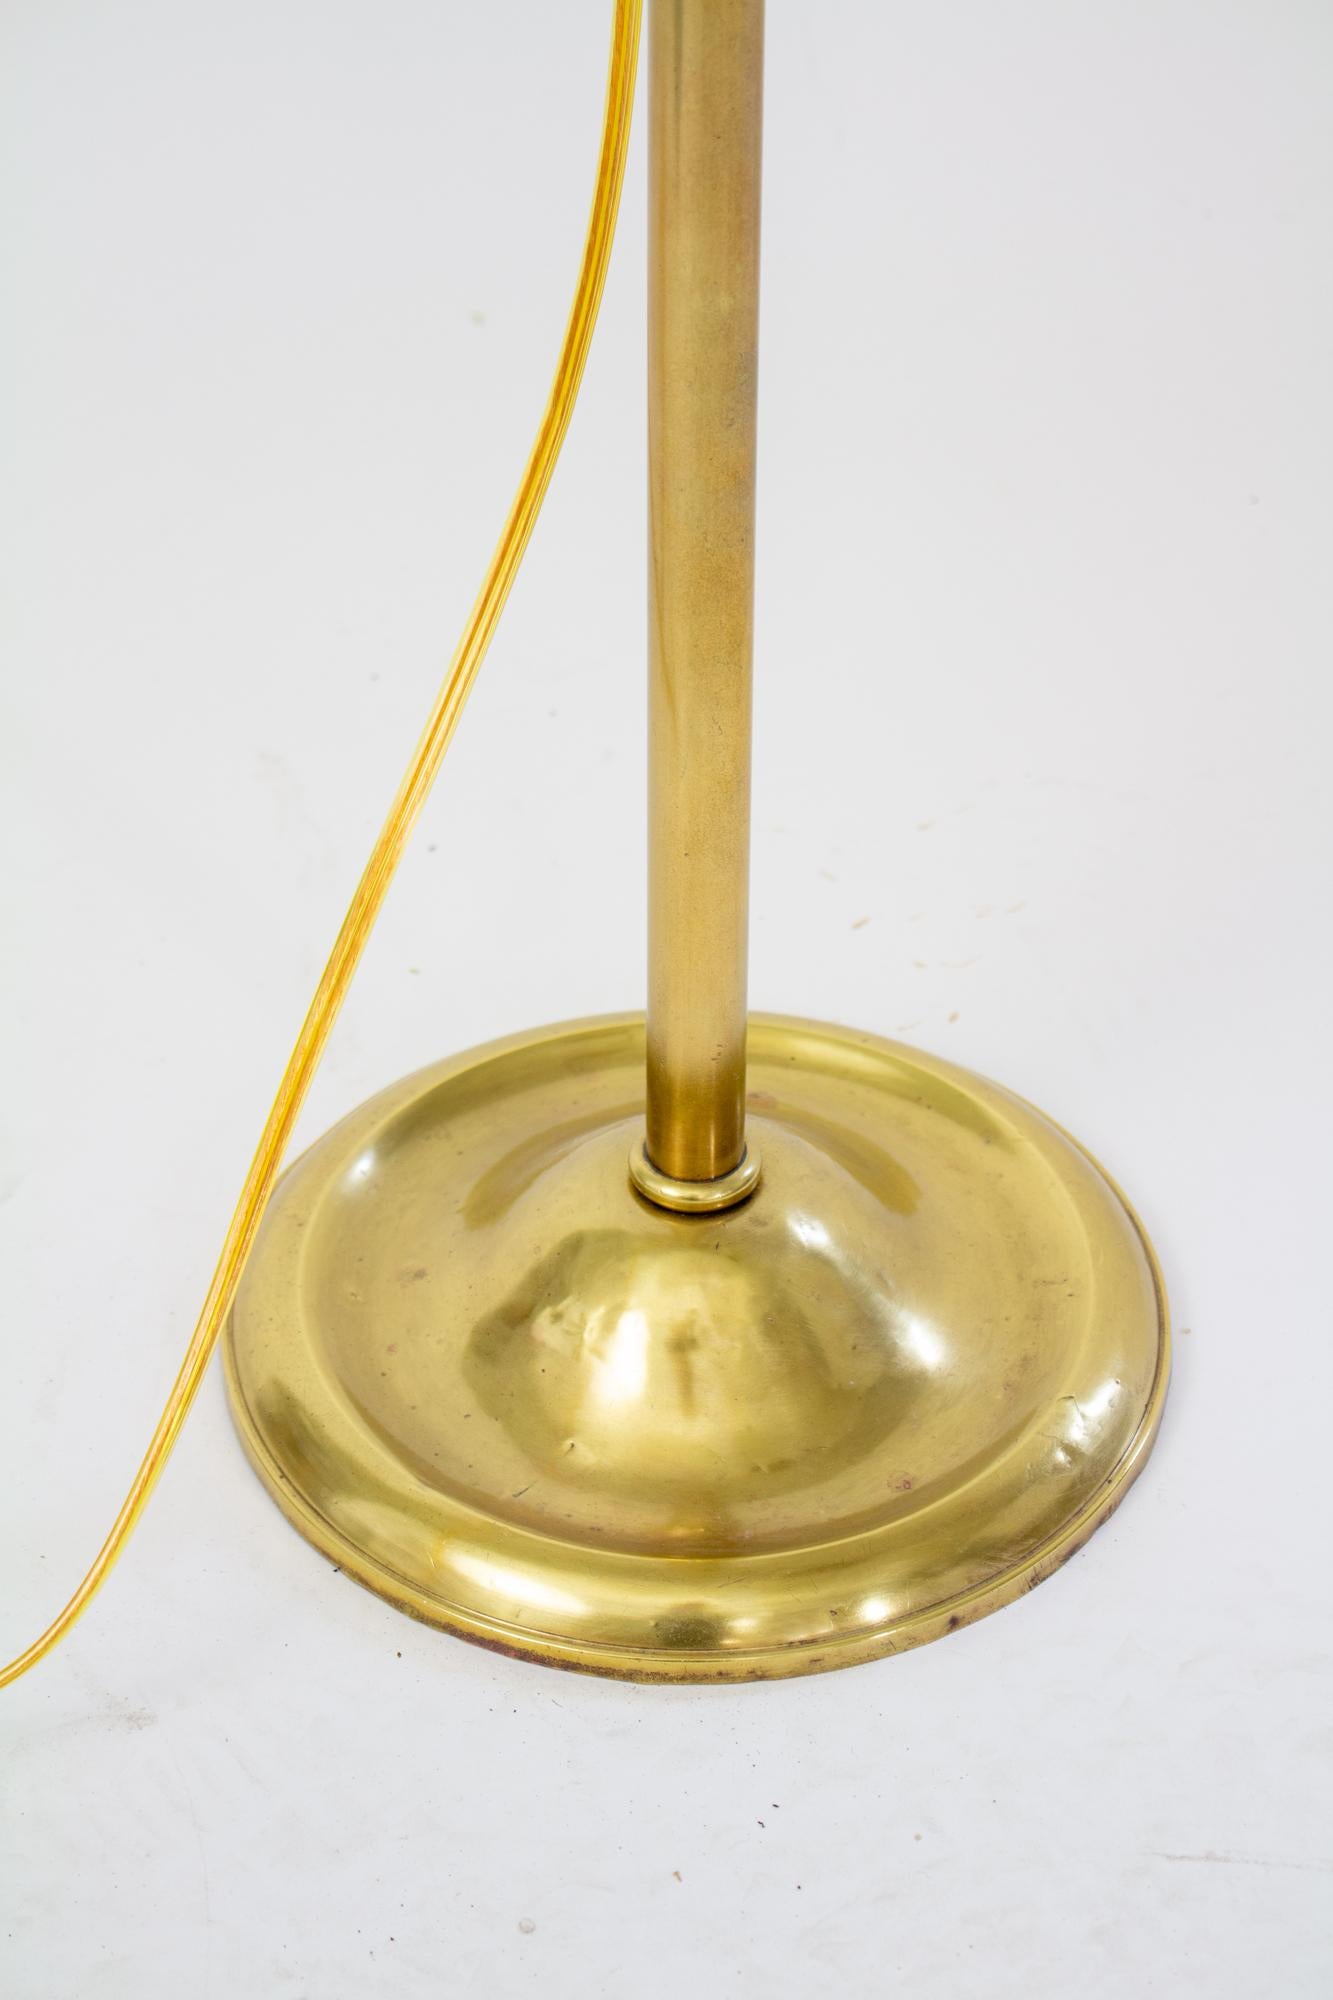 Début du 20ème siècle Edward Miller & Co. lampe à pont ajustable. Laiton avec abat-jour couleur laiton. La hauteur et l'angle de la lampe sont réglables. La base est marquée EM & Co. Début du 20e siècle, US. Recâblée avec une douille de